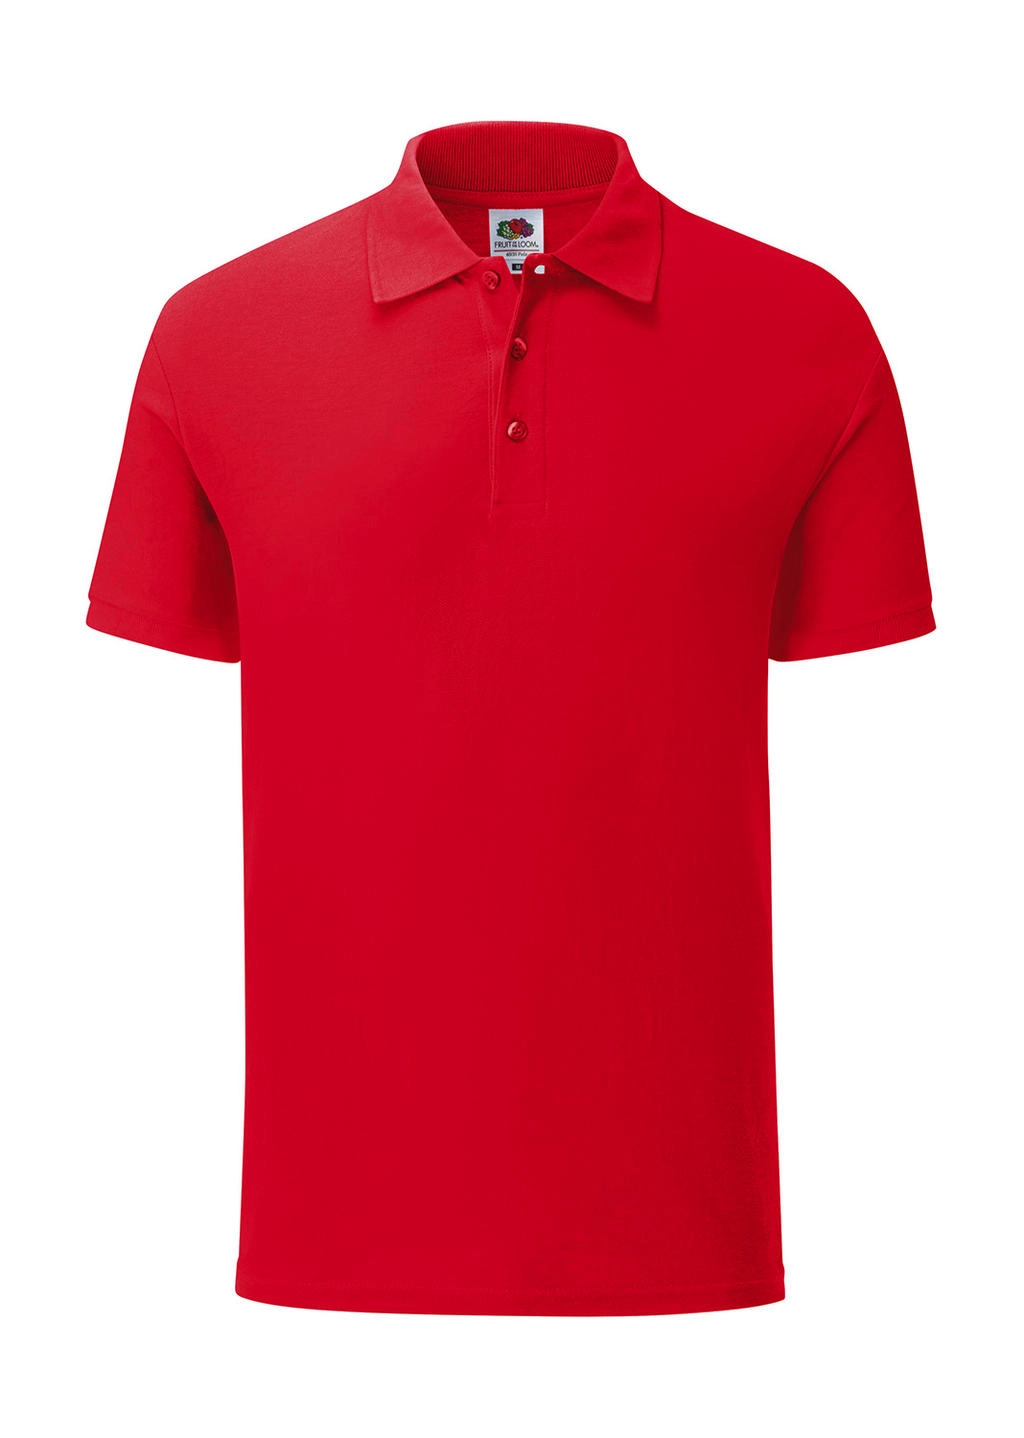 65/35 Tailored Fit Polo zum Besticken und Bedrucken in der Farbe Red mit Ihren Logo, Schriftzug oder Motiv.